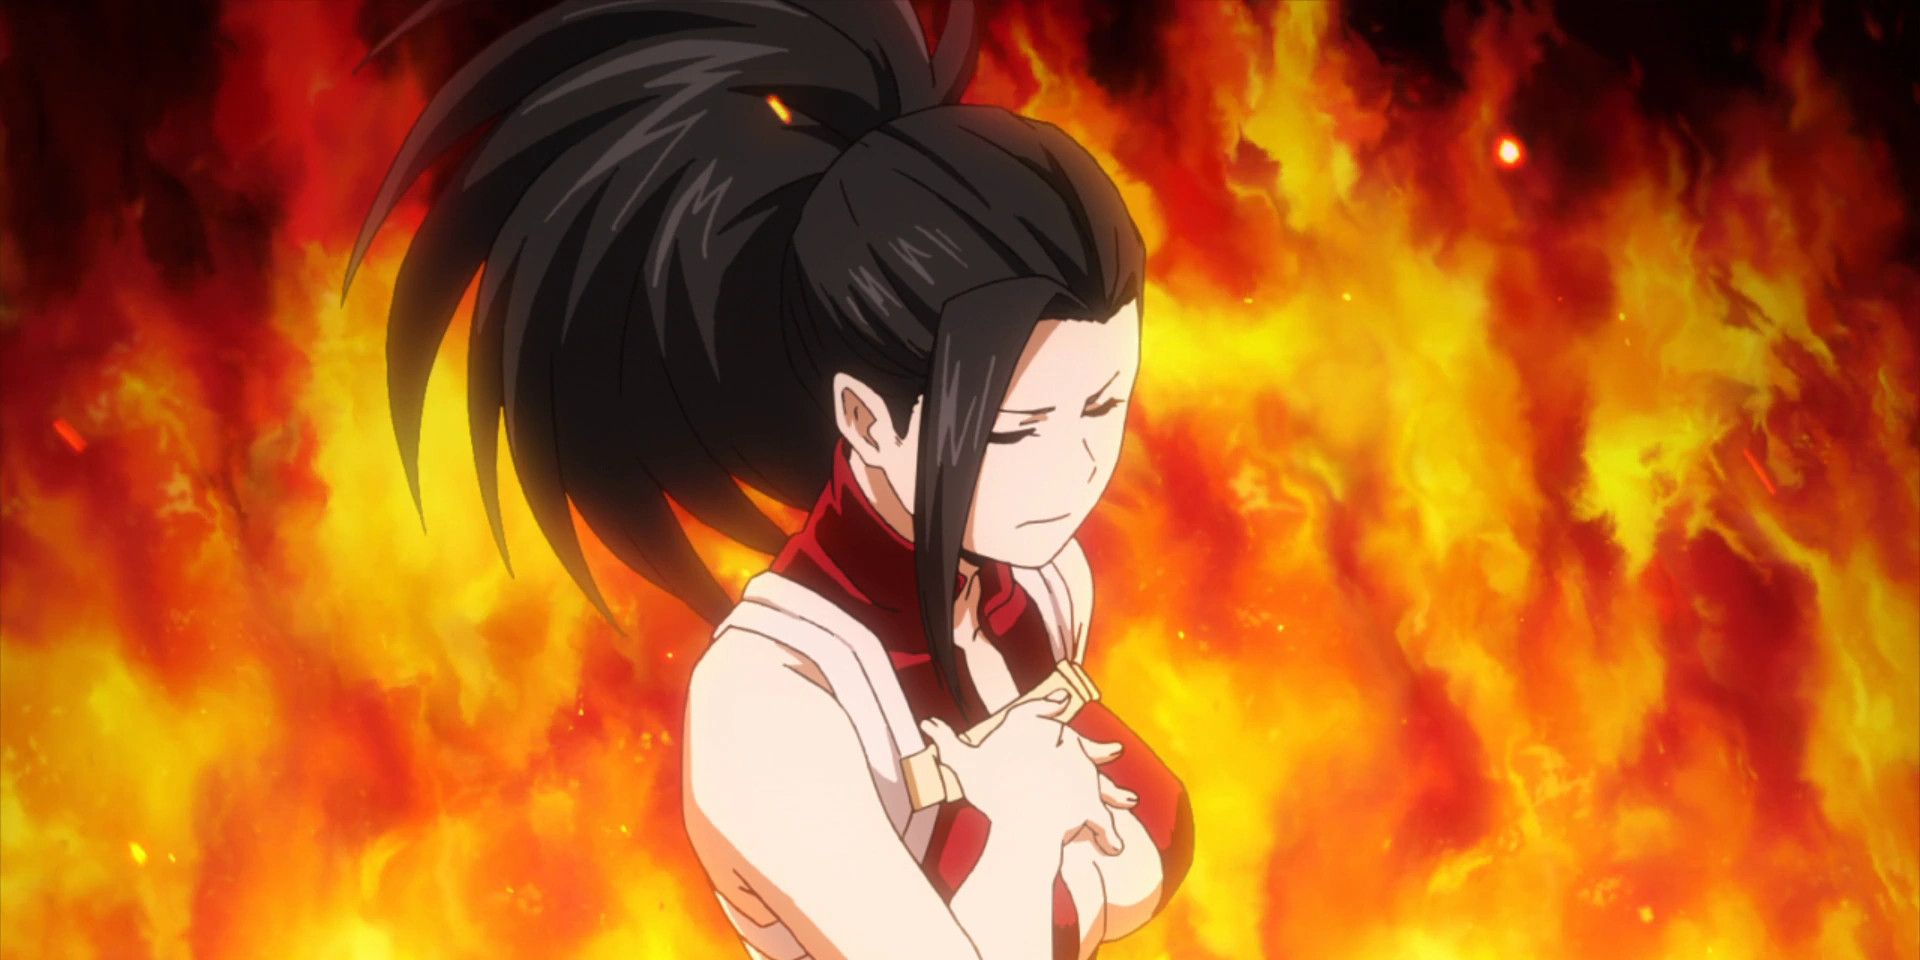 my hero academia, smartest girl momo yaoyorozu bathing in flames